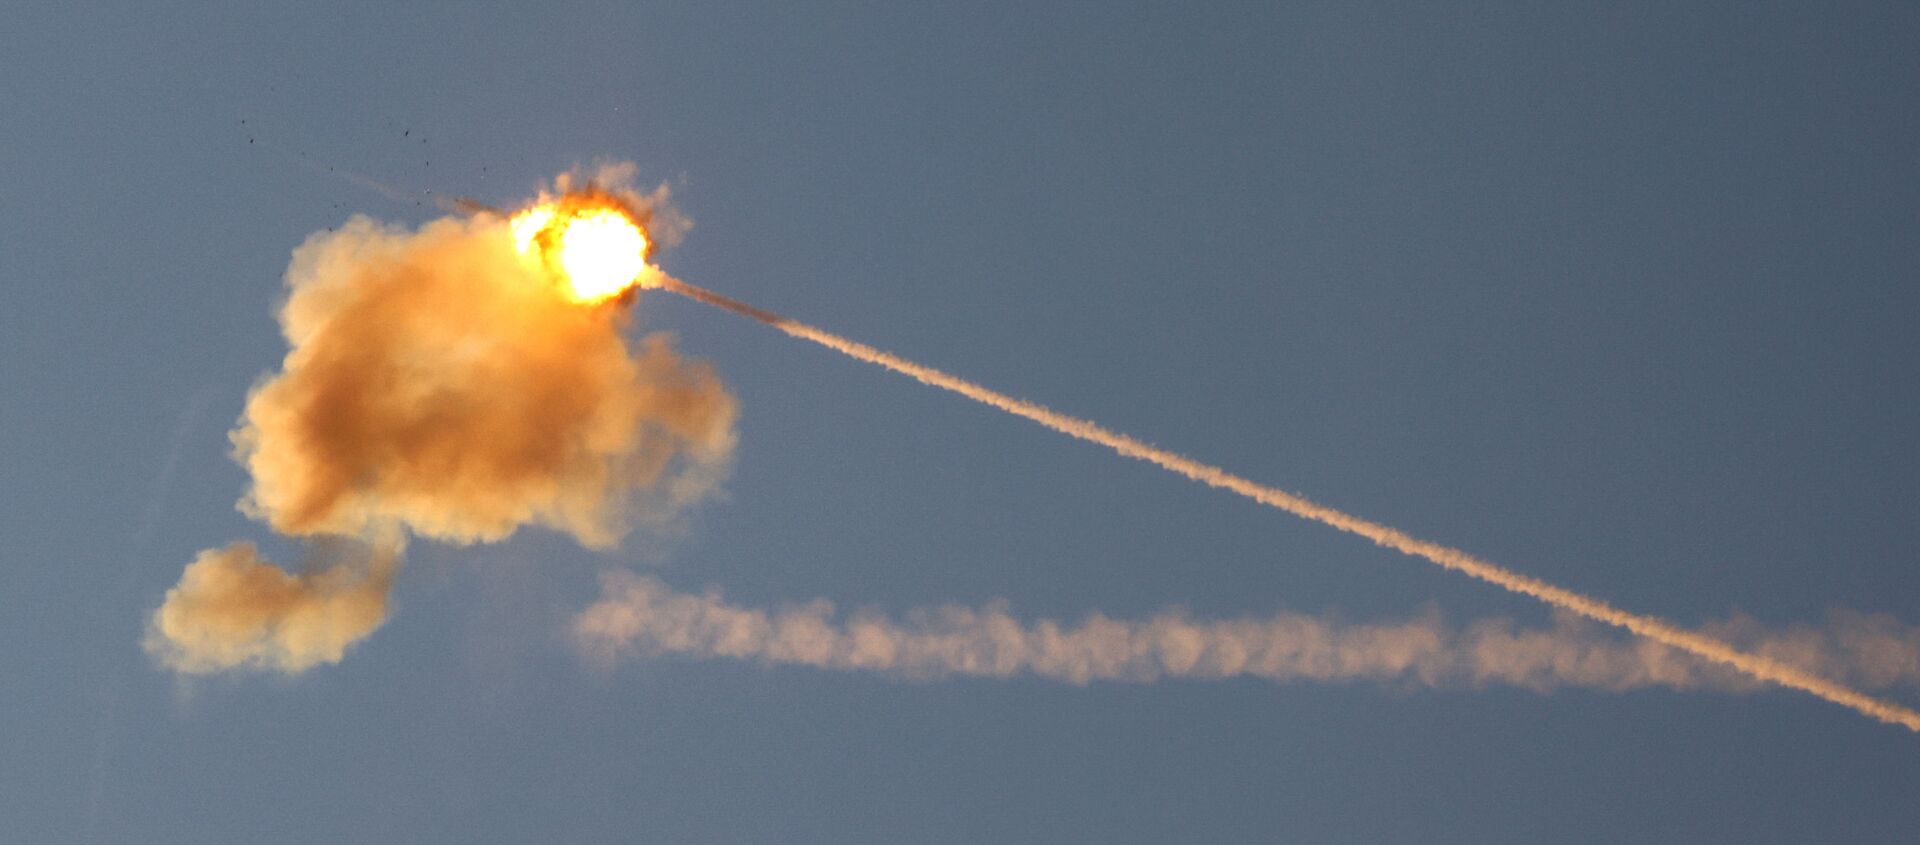 Израильская противоракетная система Железный купол перехватывает ракету, запущенную из сектора Газа - Sputnik Беларусь, 1920, 18.05.2021